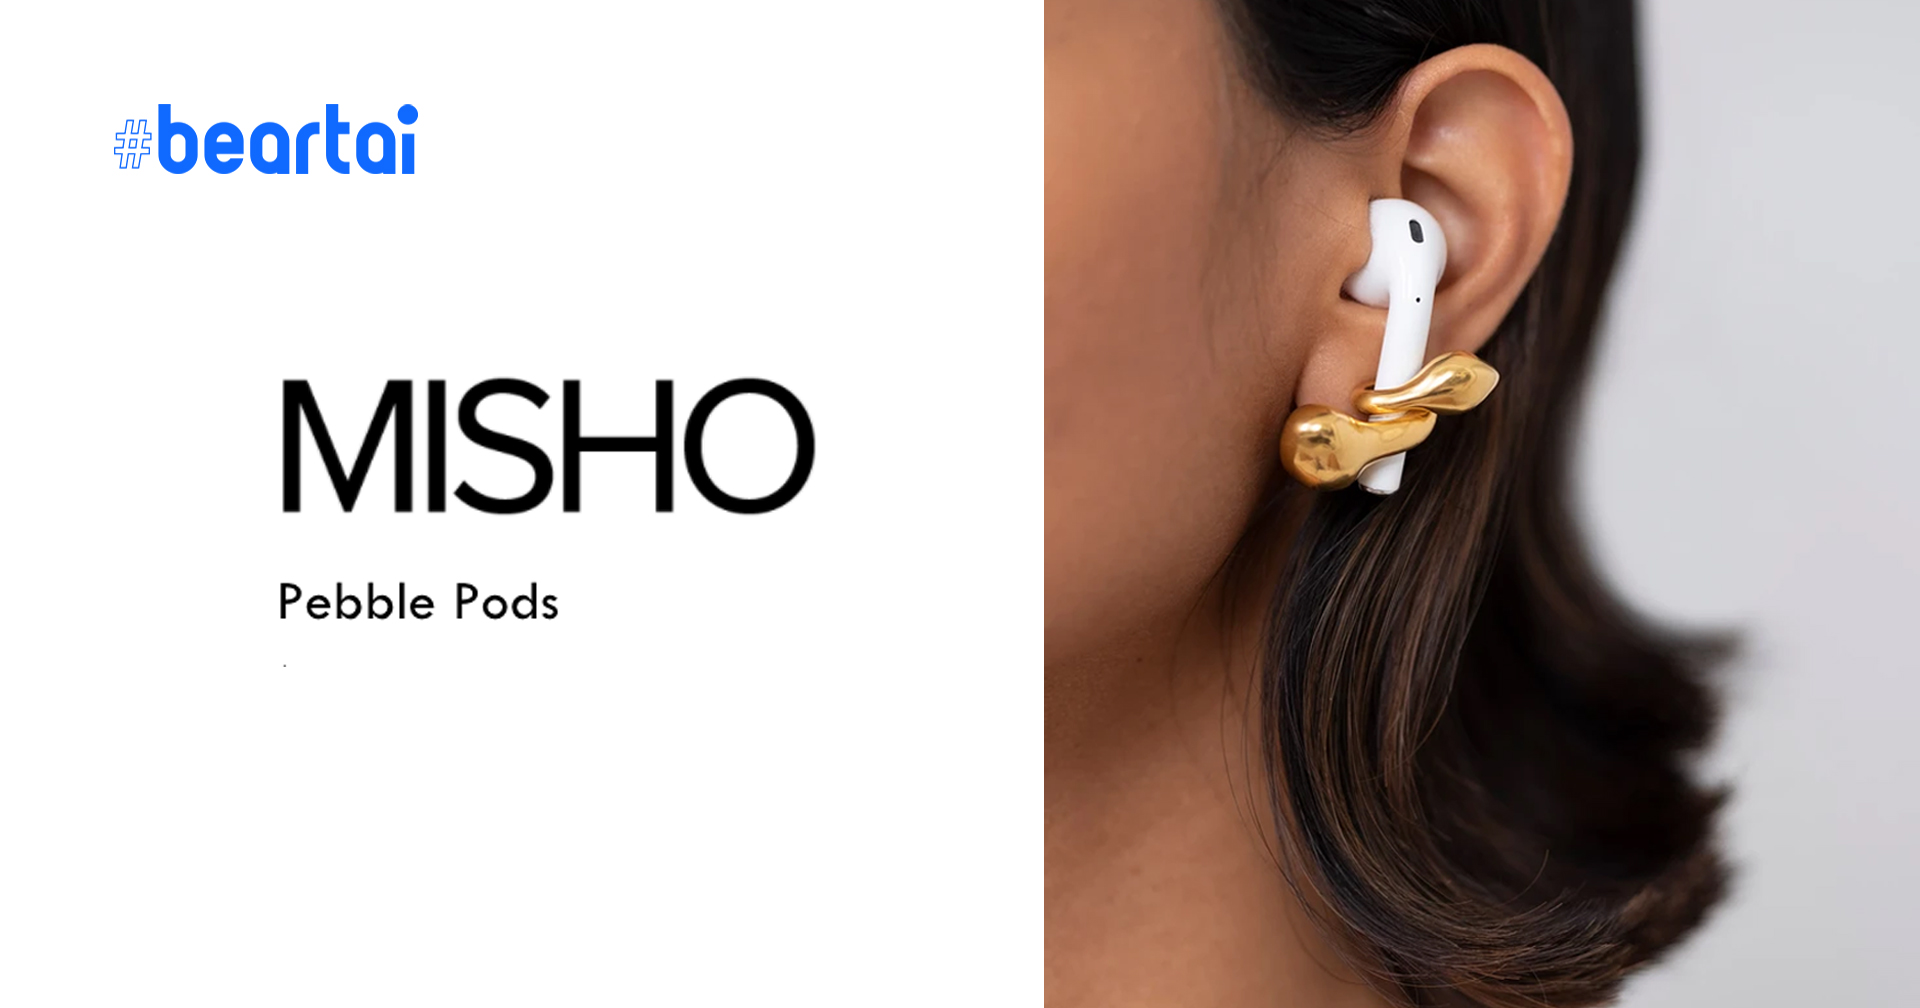 หรูหรา มีราคา Misho เปิดตัว Pebble Pods ต่างหูทอง 22K เอาไว้ใส่คู่กับ Apple AirPods!